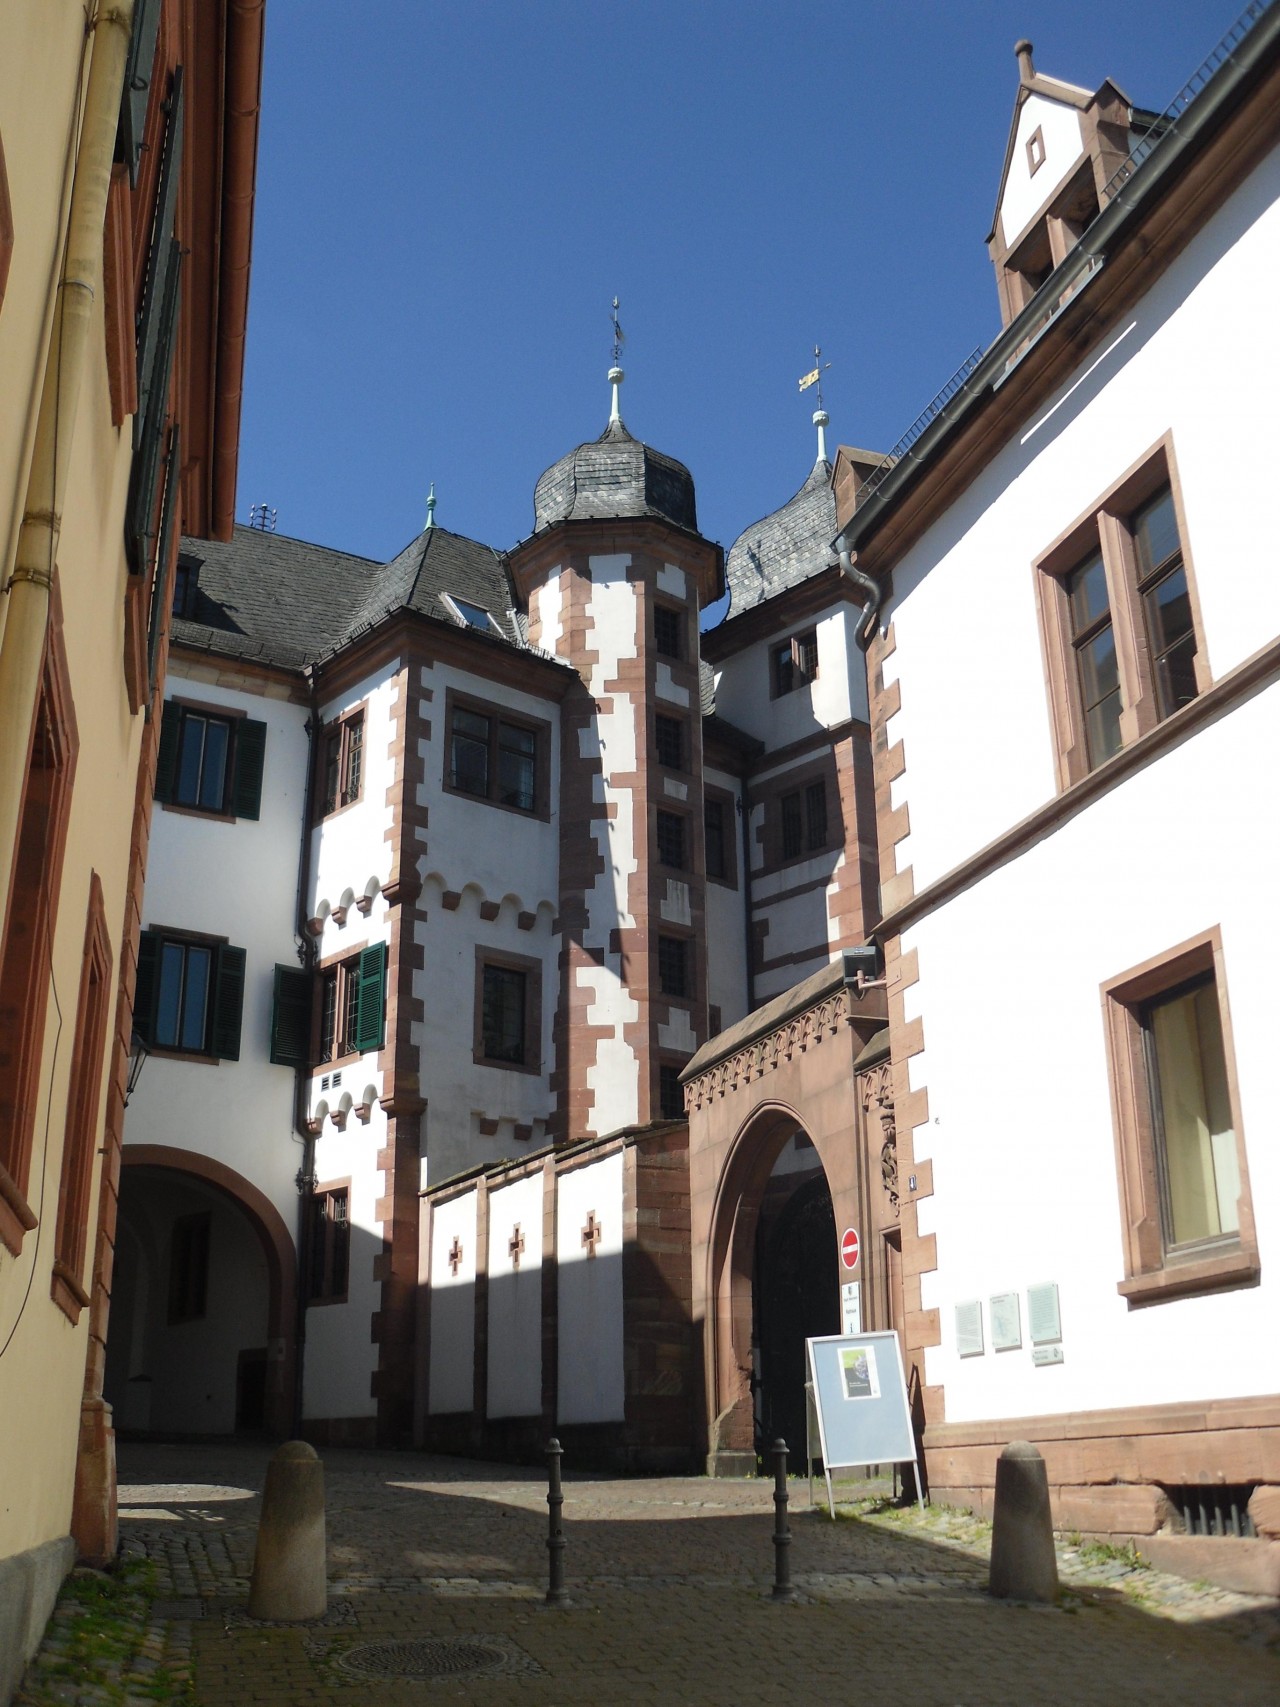 Schloss in Landauf, LandApp BW App: Türme und Tore. Blick von der Obertorstraße zum ehemaligen Schloss. Heute Rathaus der Stadt. spotted by Kolonist on 05.05.2016